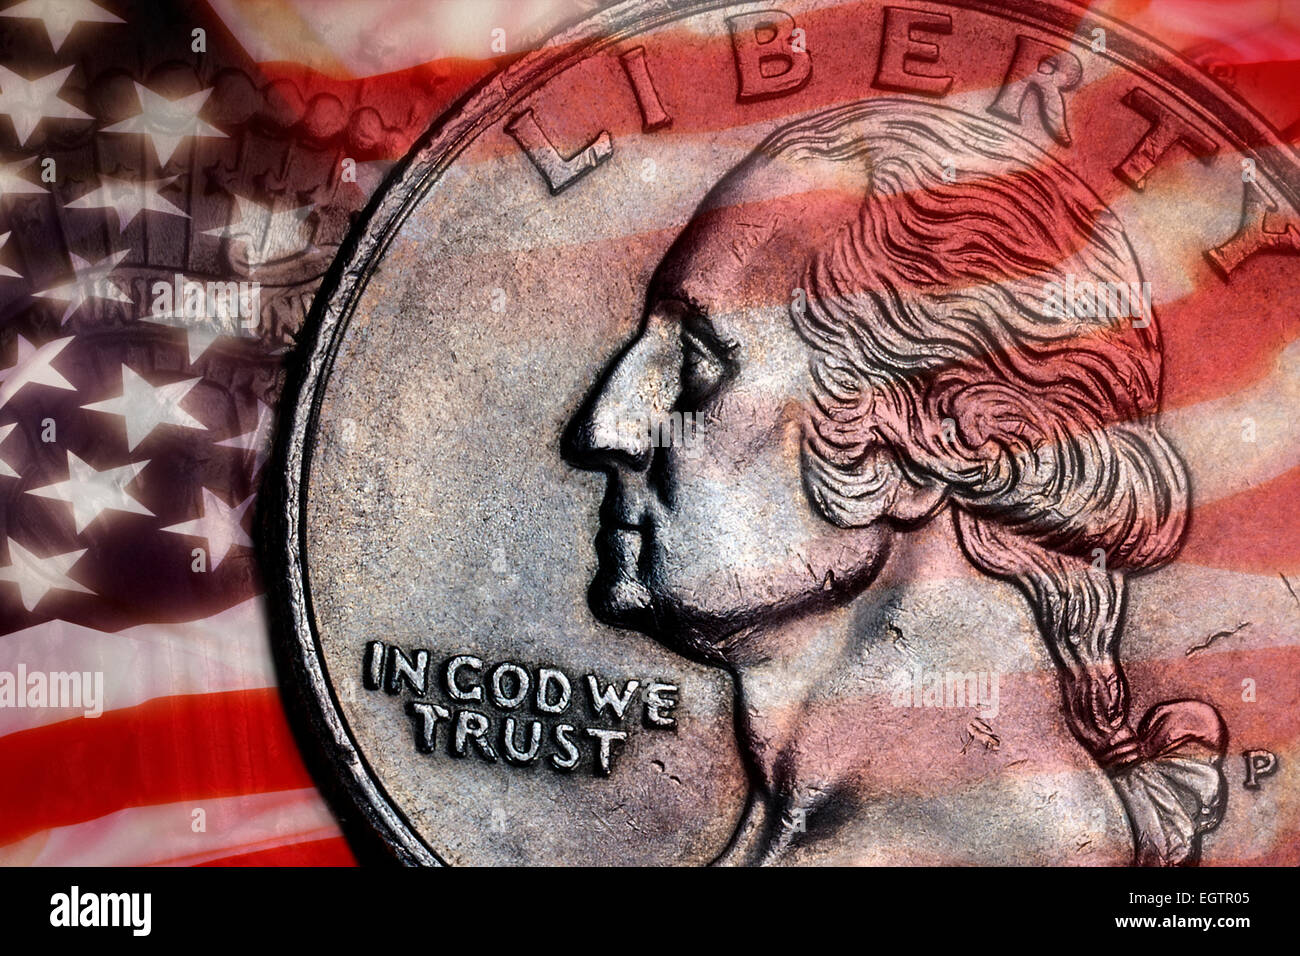 Close-up wir ausführlich auf einer Vereinigten Staaten Viertel Dollar Münze - In Gott vertrauen - Freiheit. Stockfoto